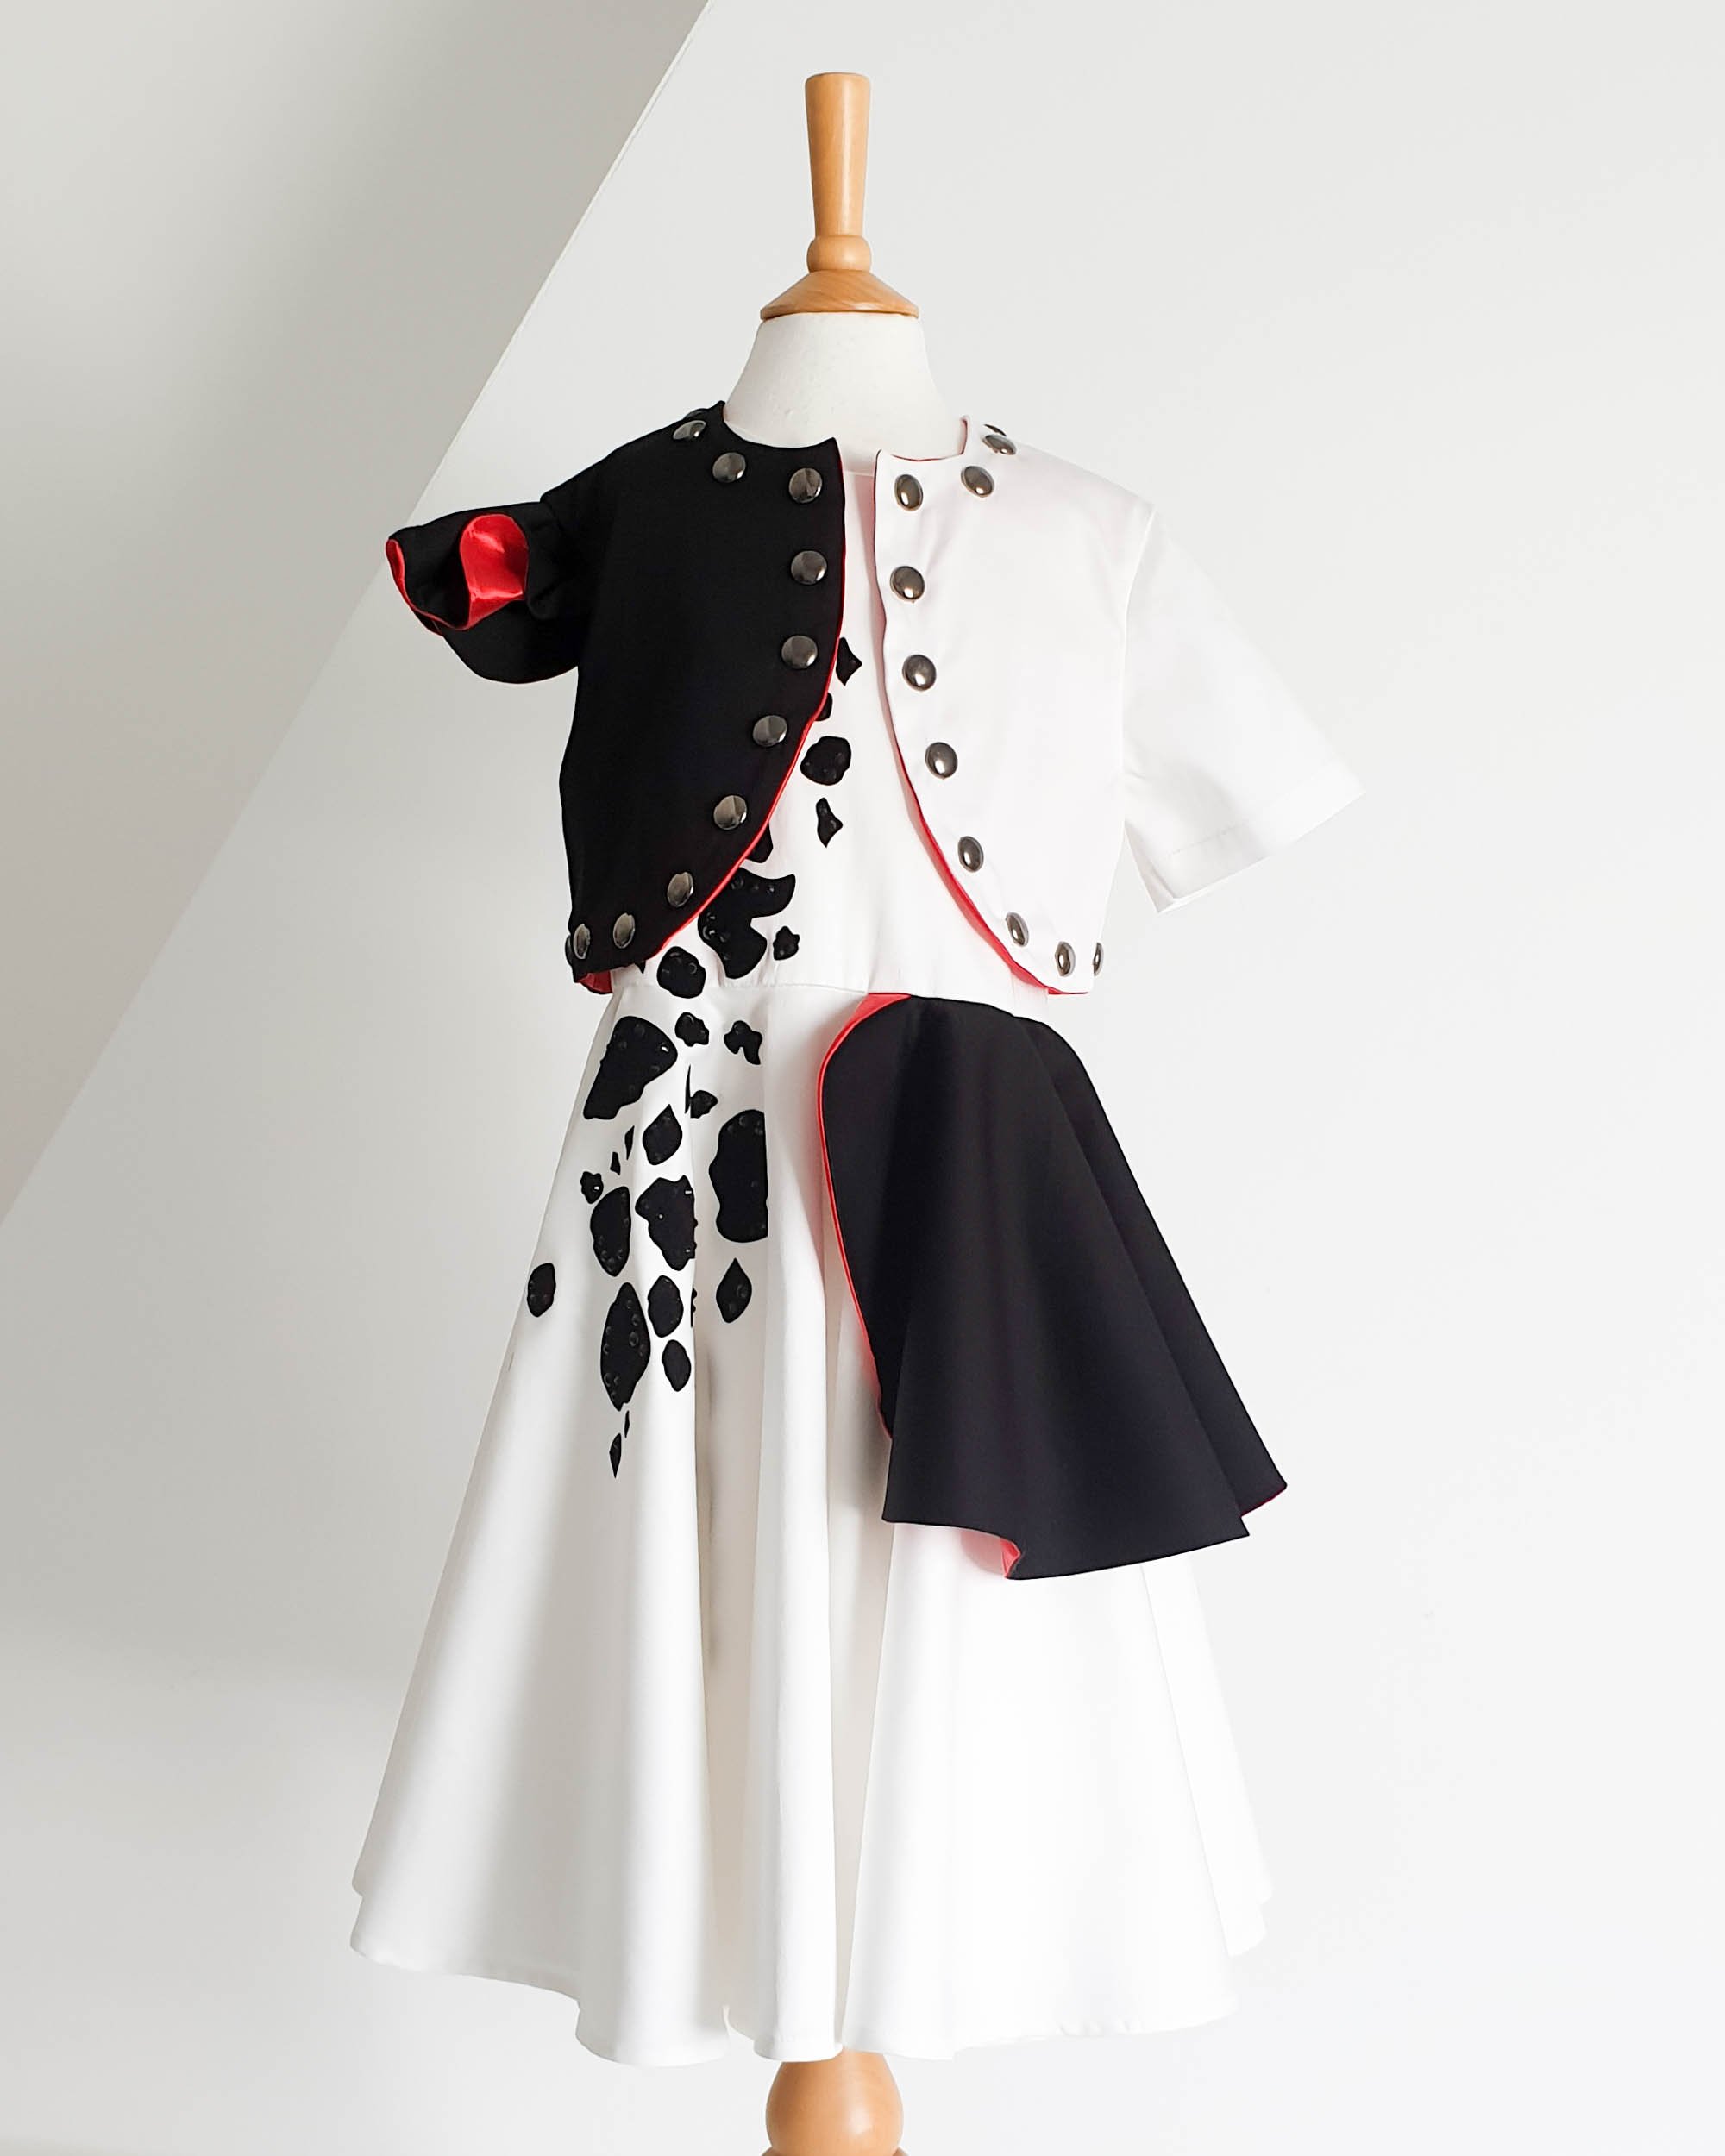 Von Cruella inspiriertes Kleid und Jacke als Halloween-Kostüm